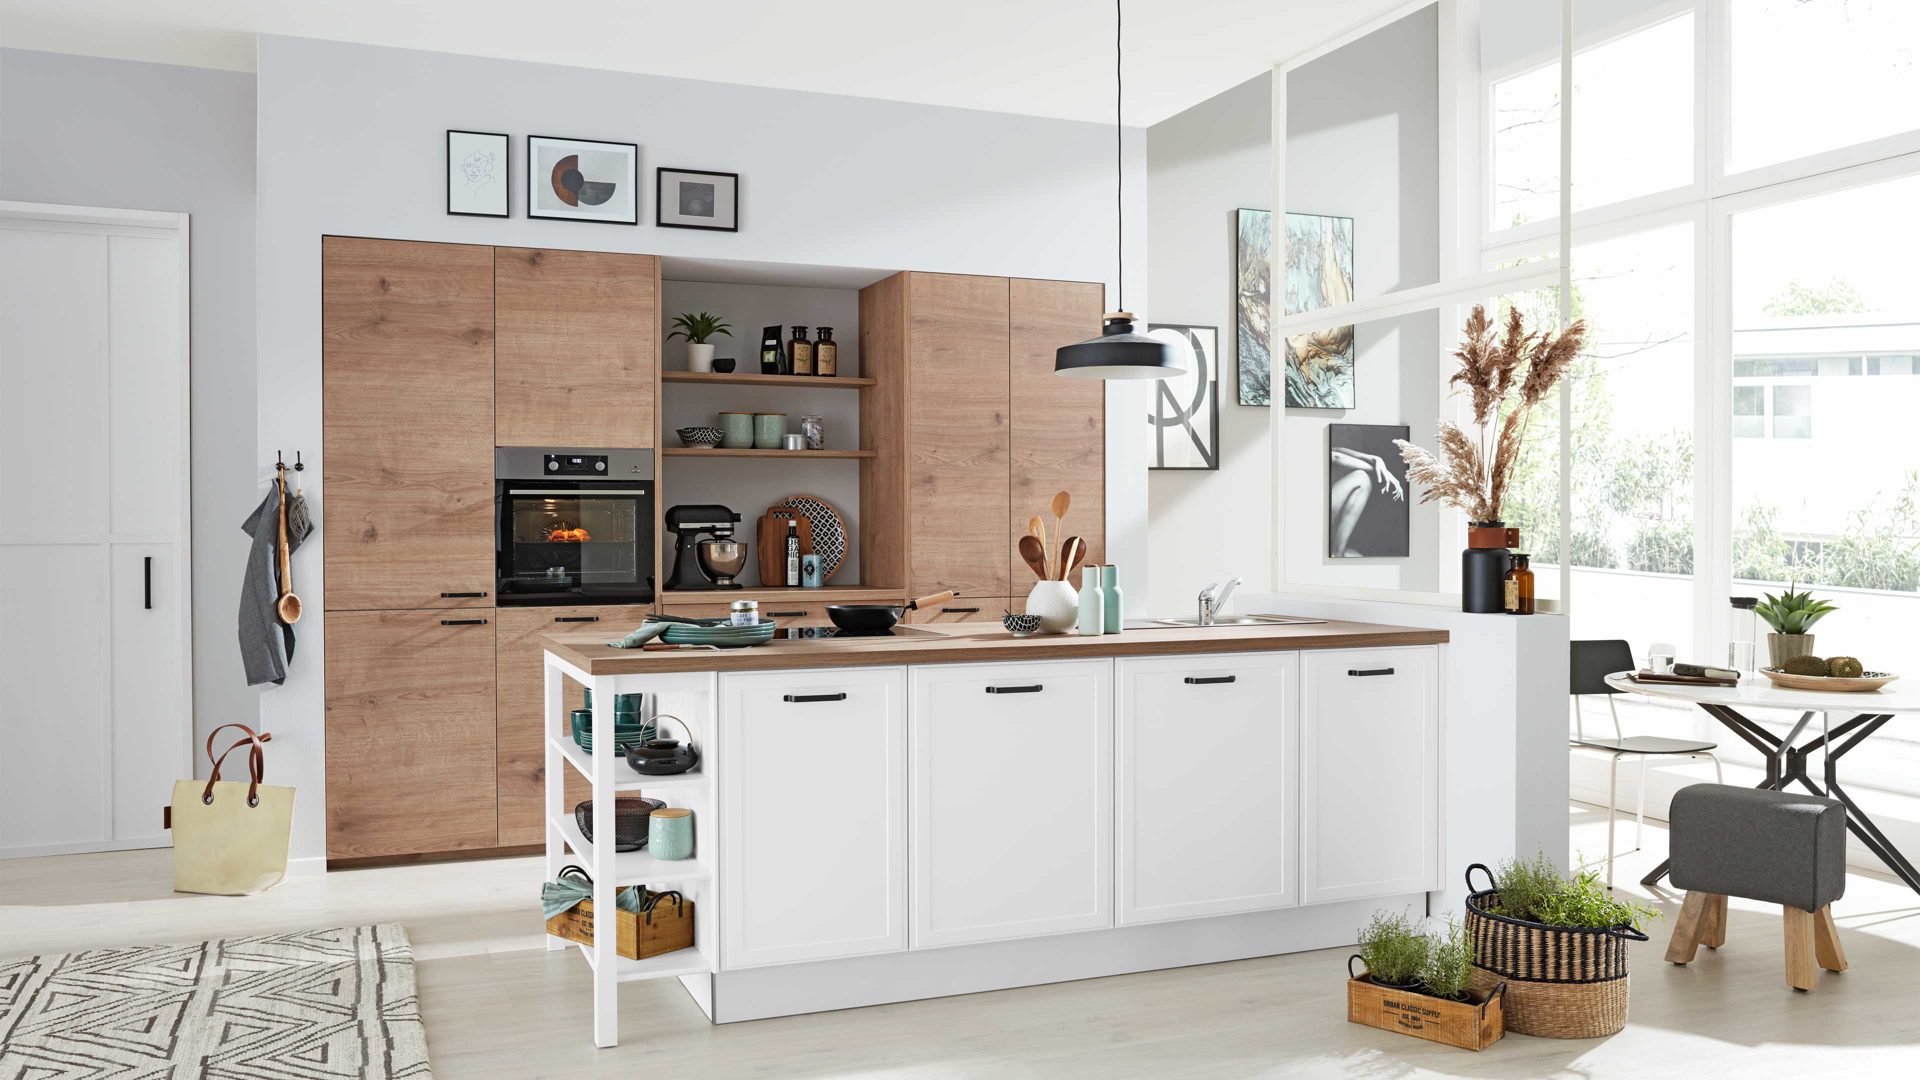 Einbauküche Interliving aus Holz in Weiß Interliving Küche Serie 3036 mit AEG-Einbaugeräten Weiß & Steineiche - zweizeilig